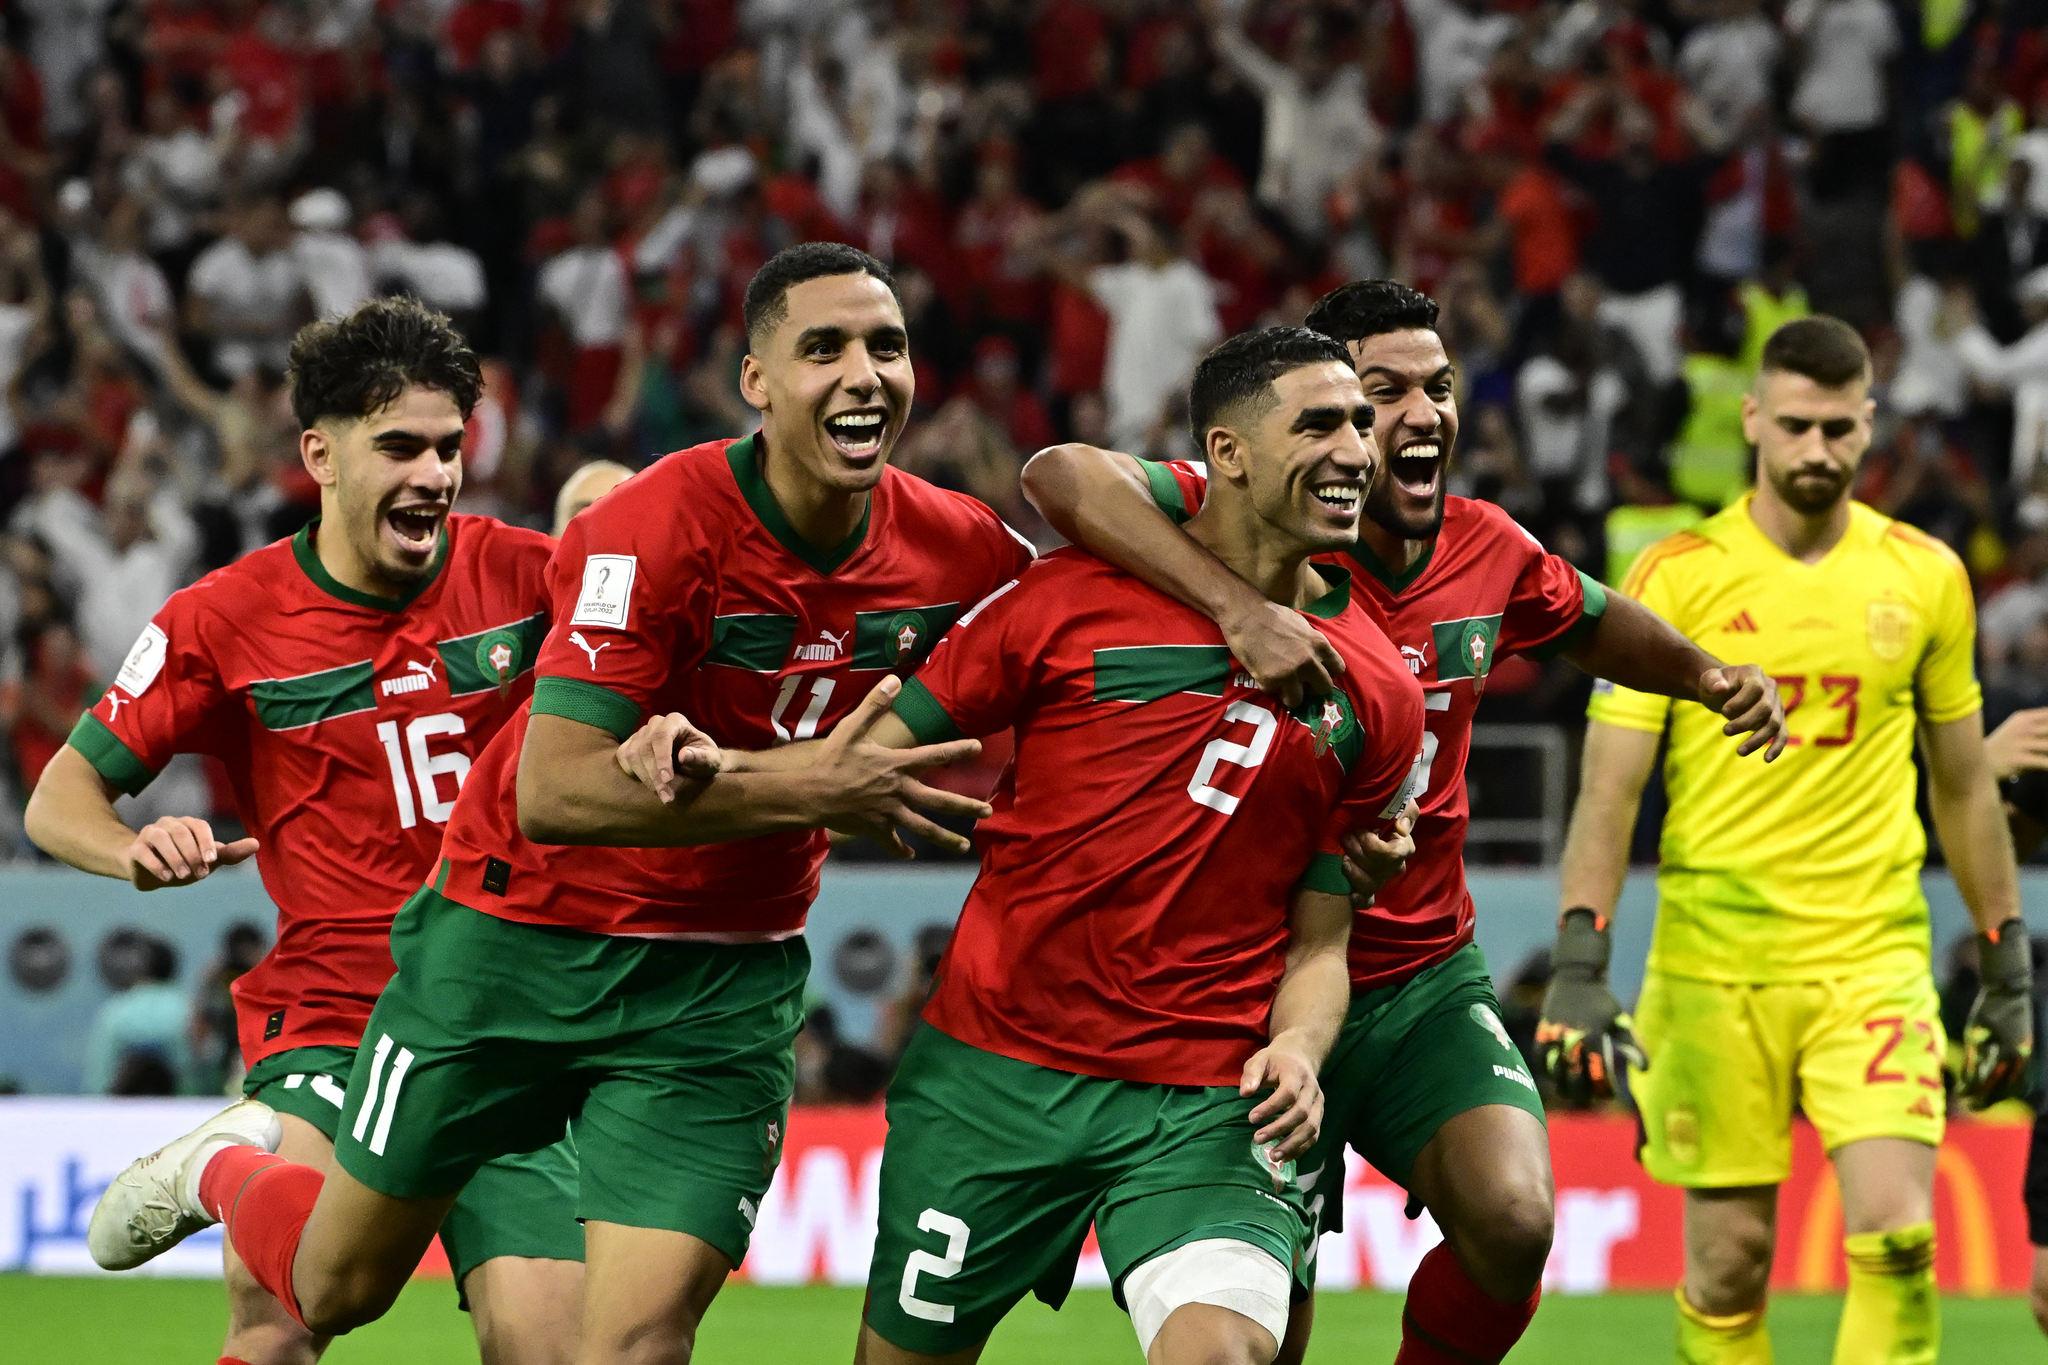 Marrocos x Espanha tem primeiro tempo meia boca; web critica